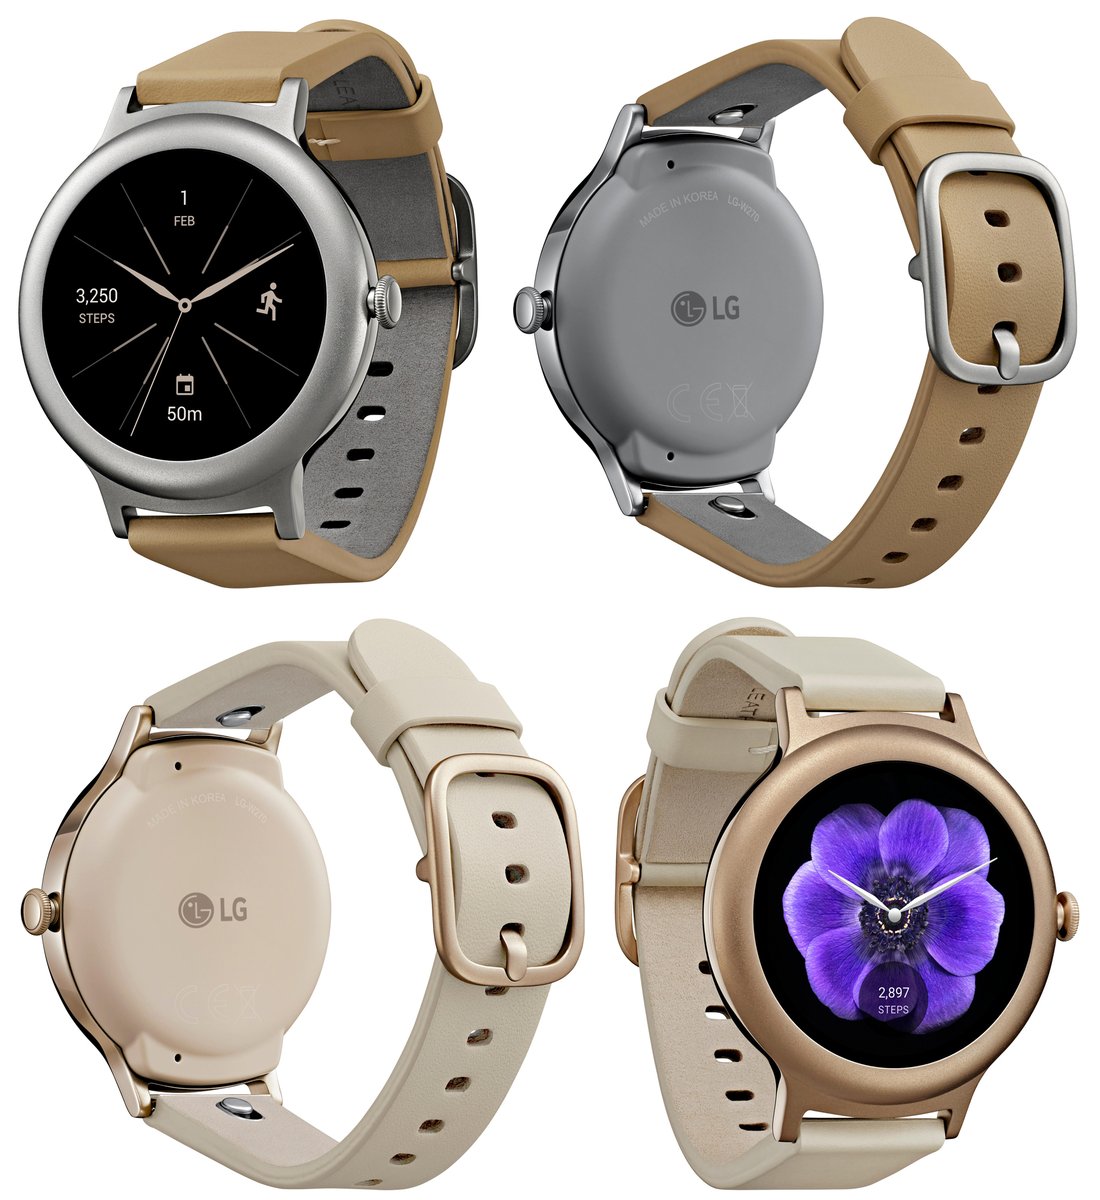 Αυτό είναι το LG Watch Style που θα βασίζεται στο Android Wear 2.0